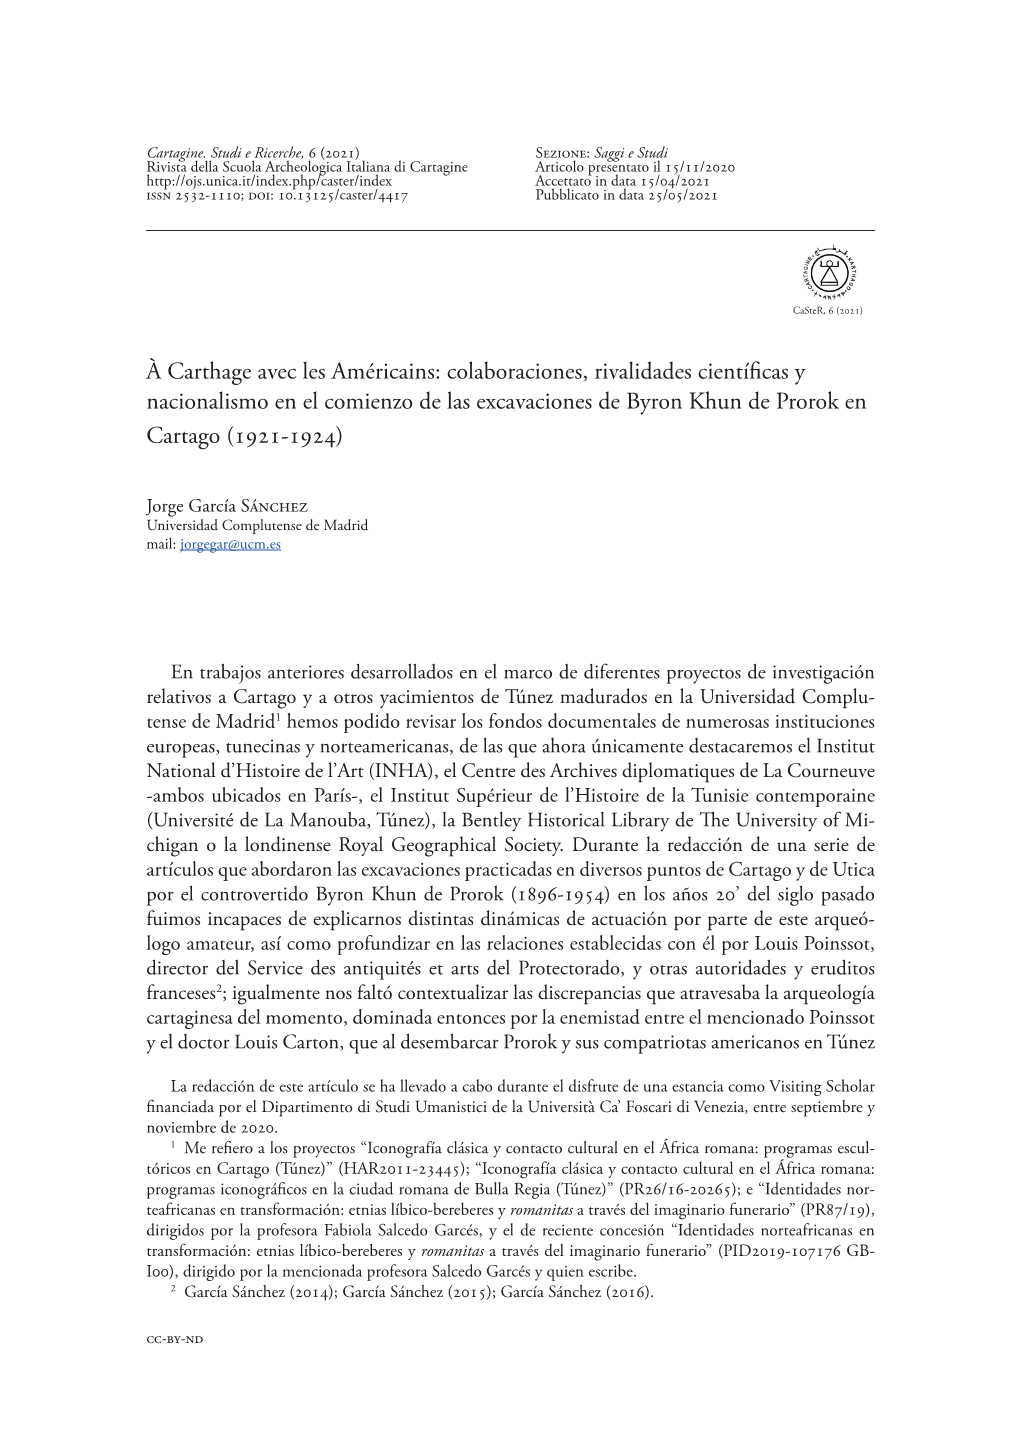 Colaboraciones, Rivalidades Científicas Y Nacionalismo En El Comienzo De Las Excavaciones De Byron Khun De Prorok En Cartago (1921-1924)